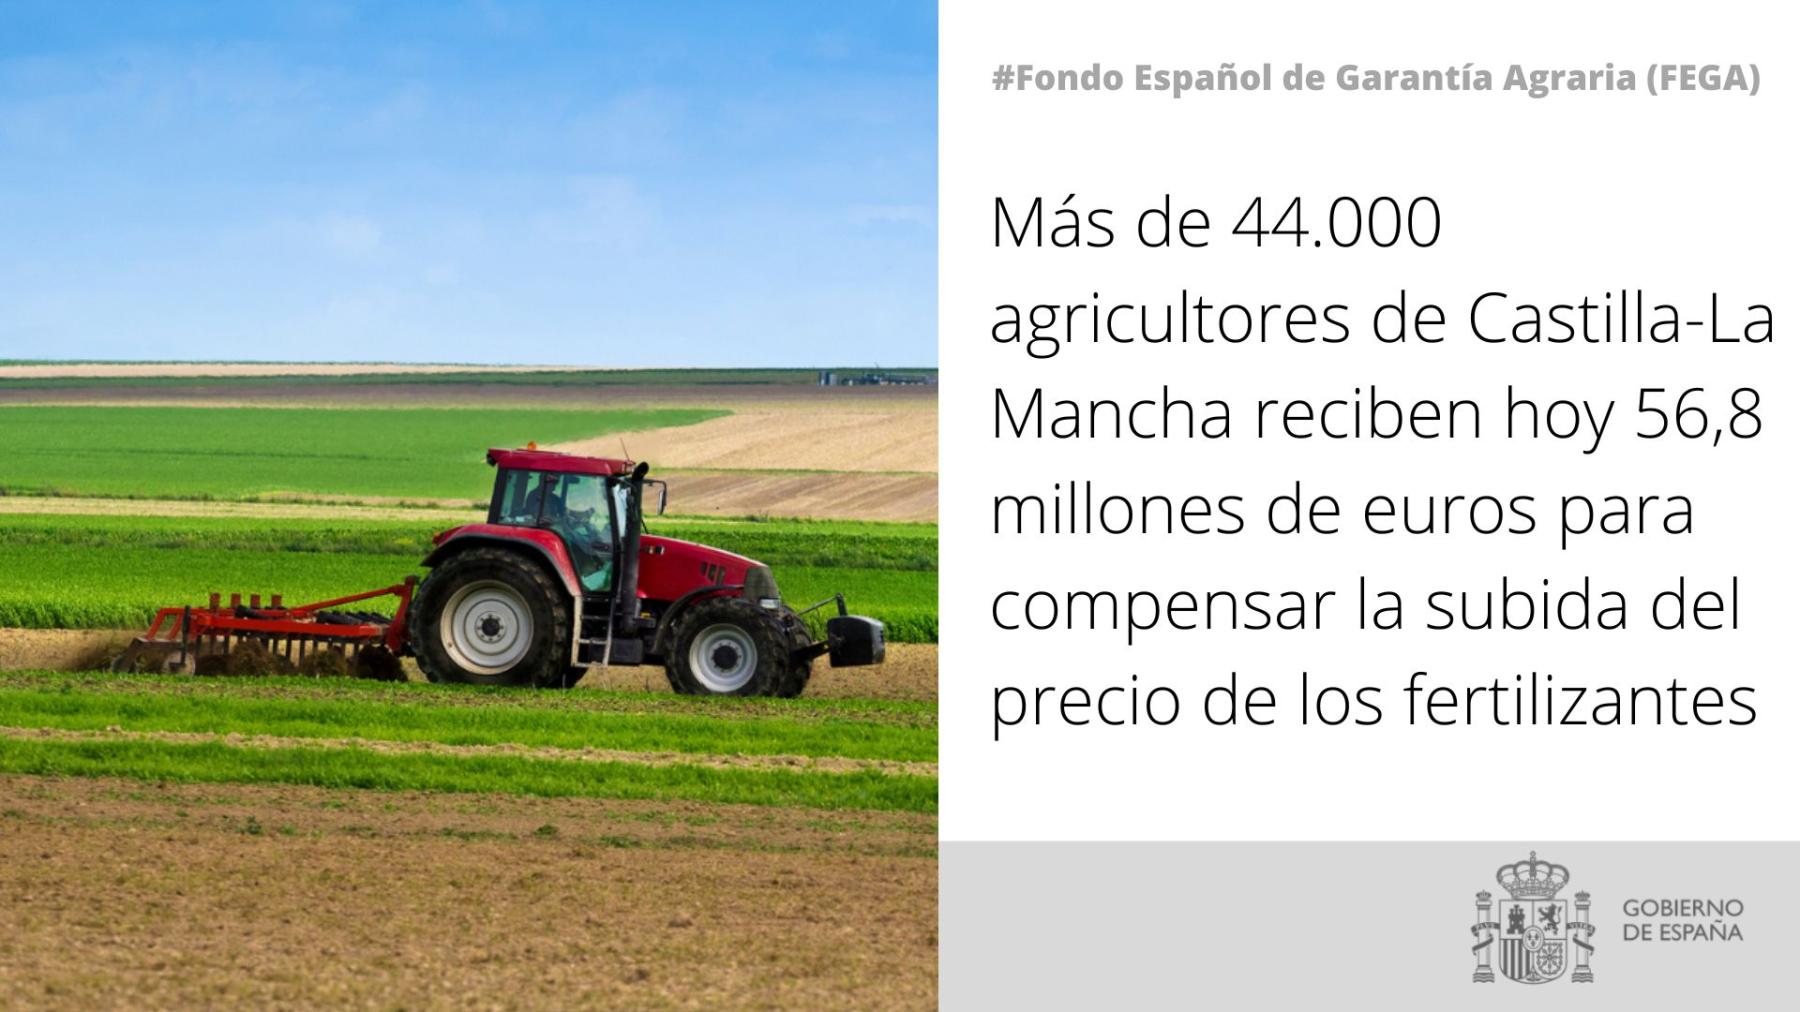 Más de 44.000 agricultores de Castilla-La Mancha reciben hoy 56,8 millones de euros para compensar la subida del precio de los fertilizantes